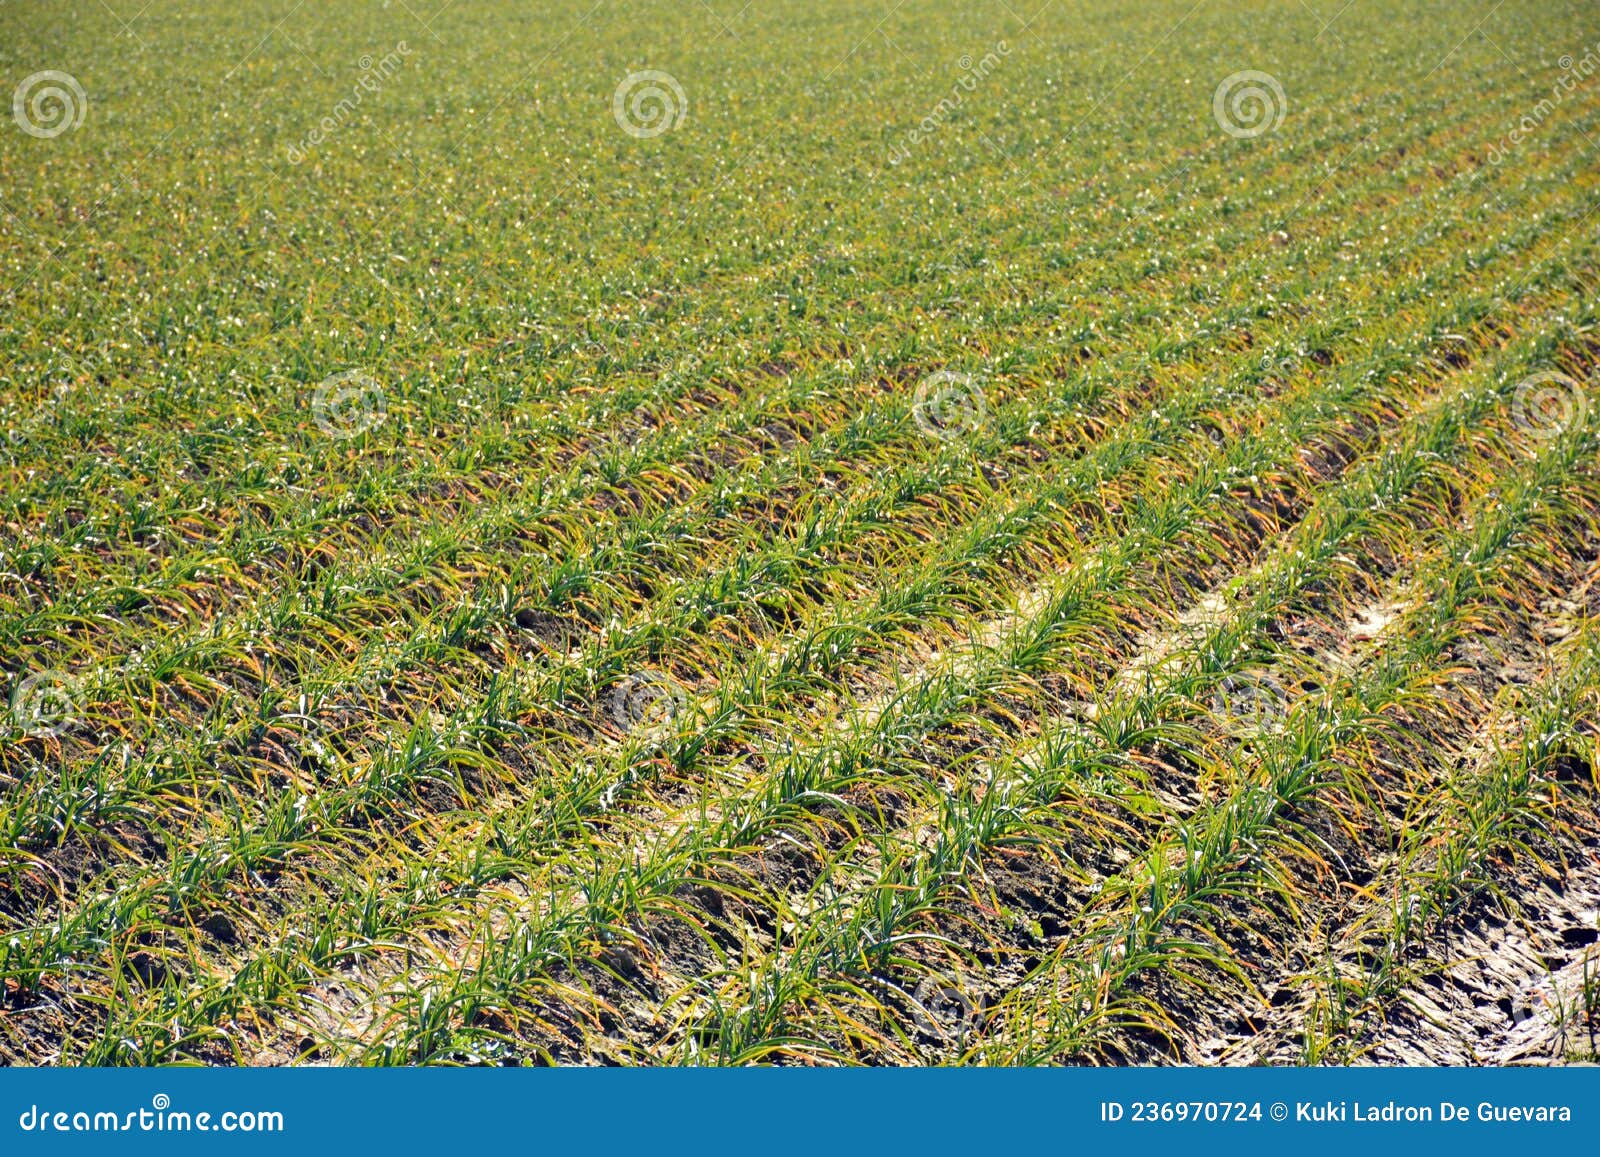 crop garlic plantation in autumn